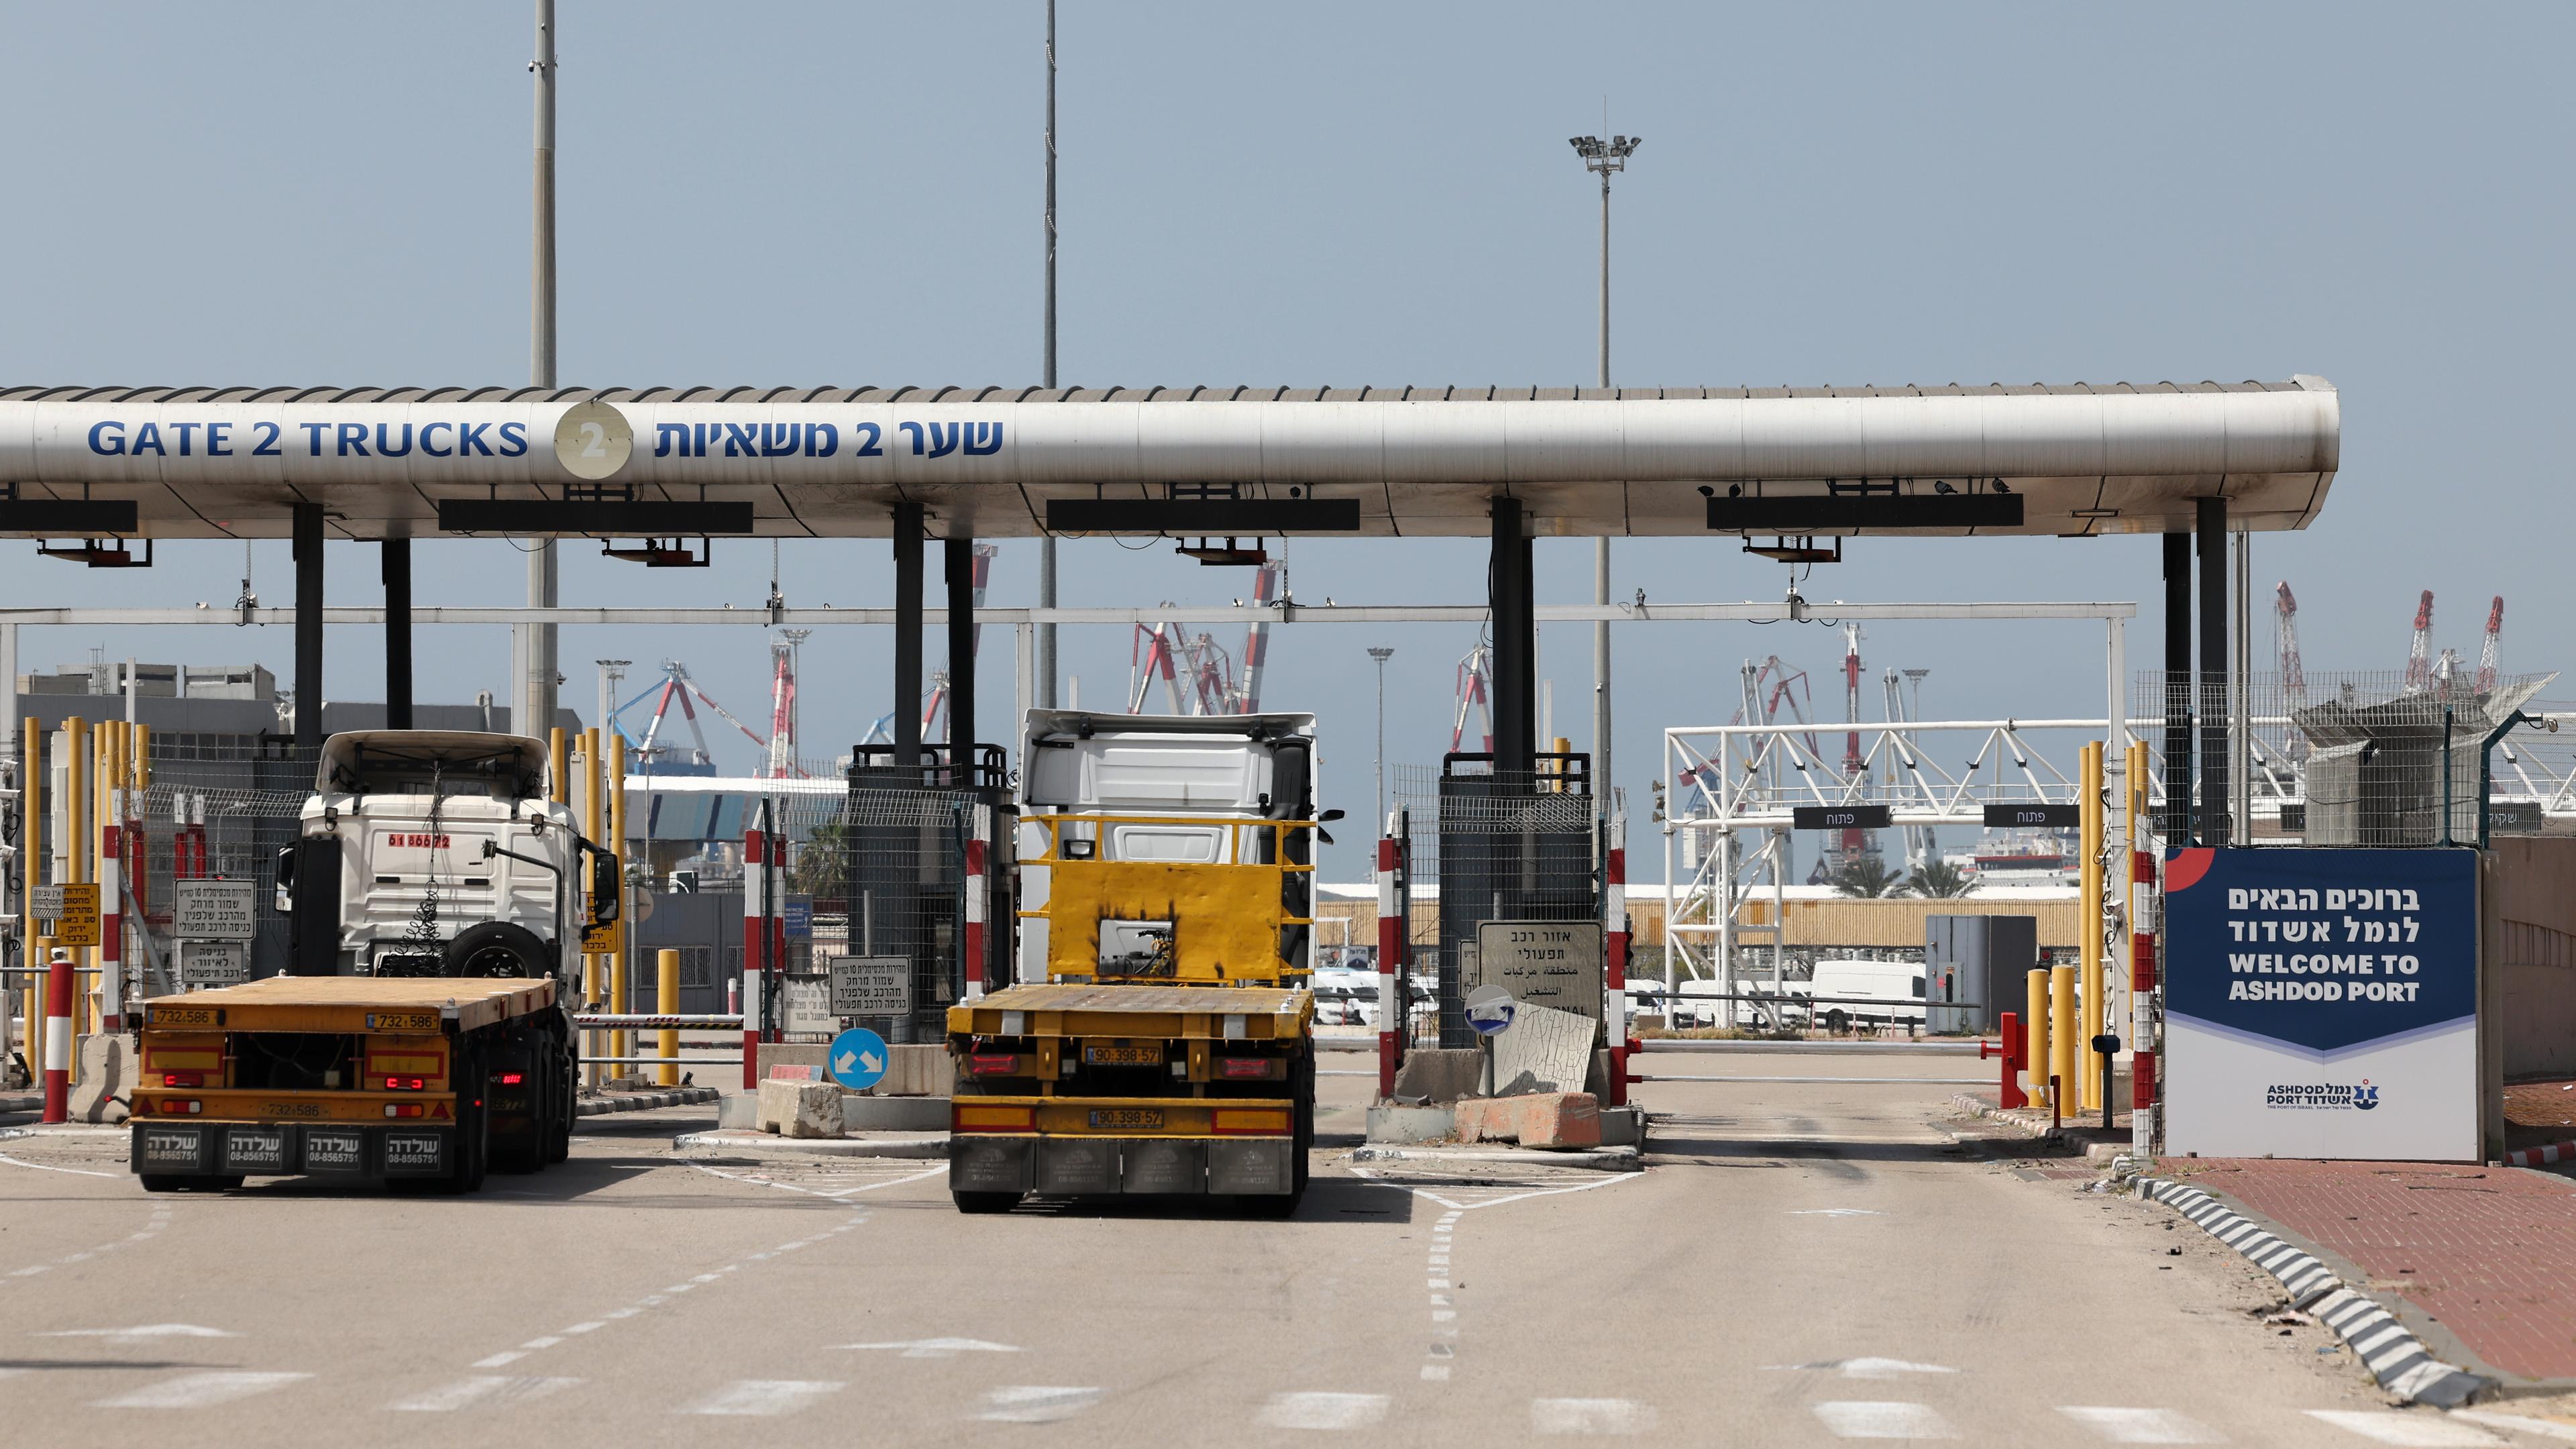 Lastwagen fahren durch ein Tor am Eingang des Hafens von Aschdod